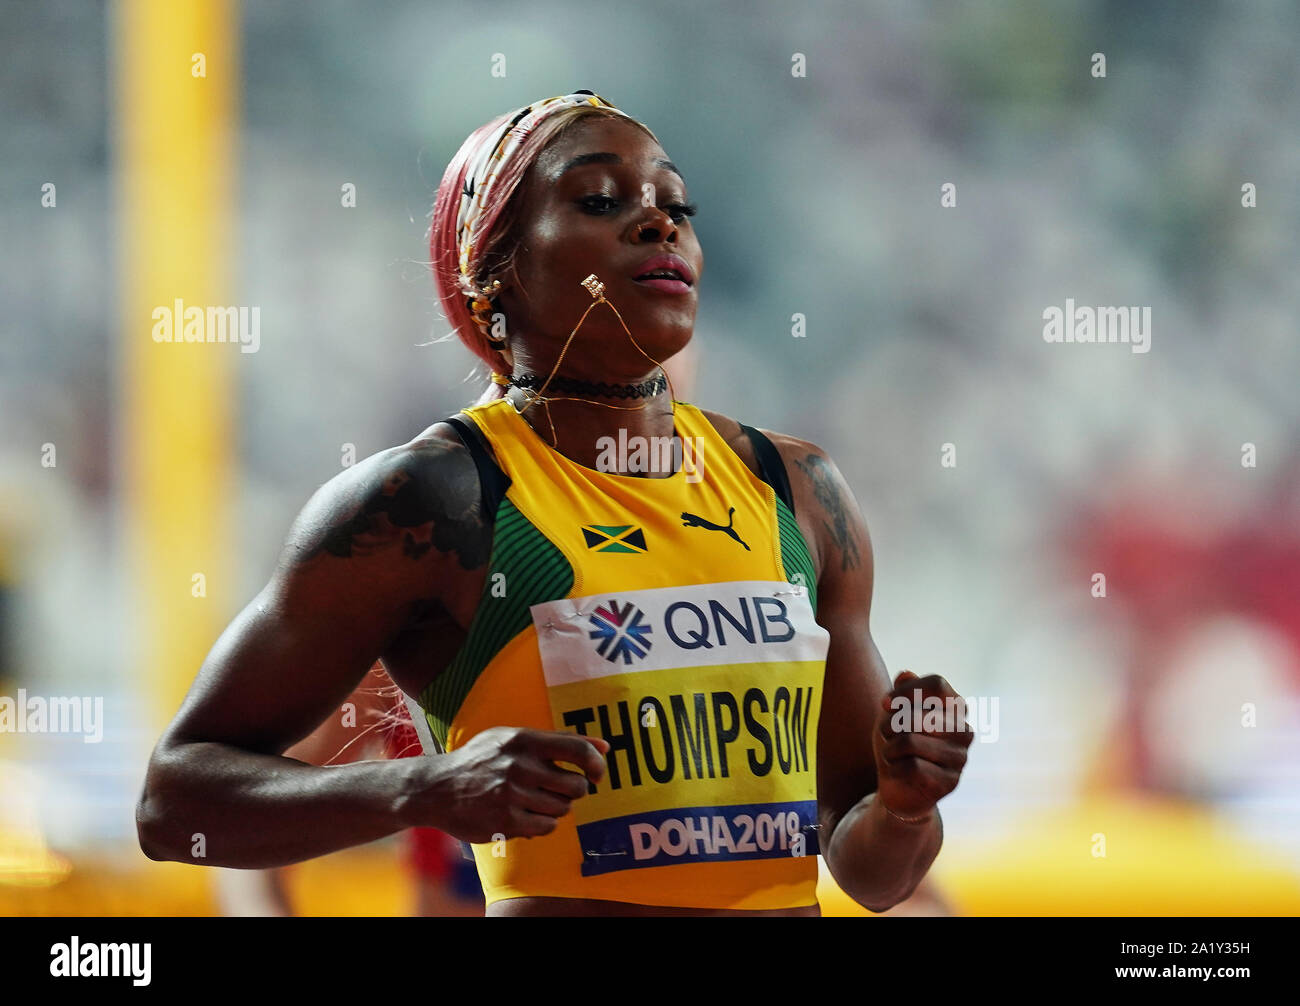 Doha, Qatar. Sep 29, 2019. Elaine Thompson de la Jamaïque en compétition dans le 100 mètres pour les femmes au cours de la 17e Championnats du monde d'athlétisme IAAF à la Khalifa Stadium de Doha, au Qatar. Ulrik Pedersen/CSM/Alamy Live News Banque D'Images